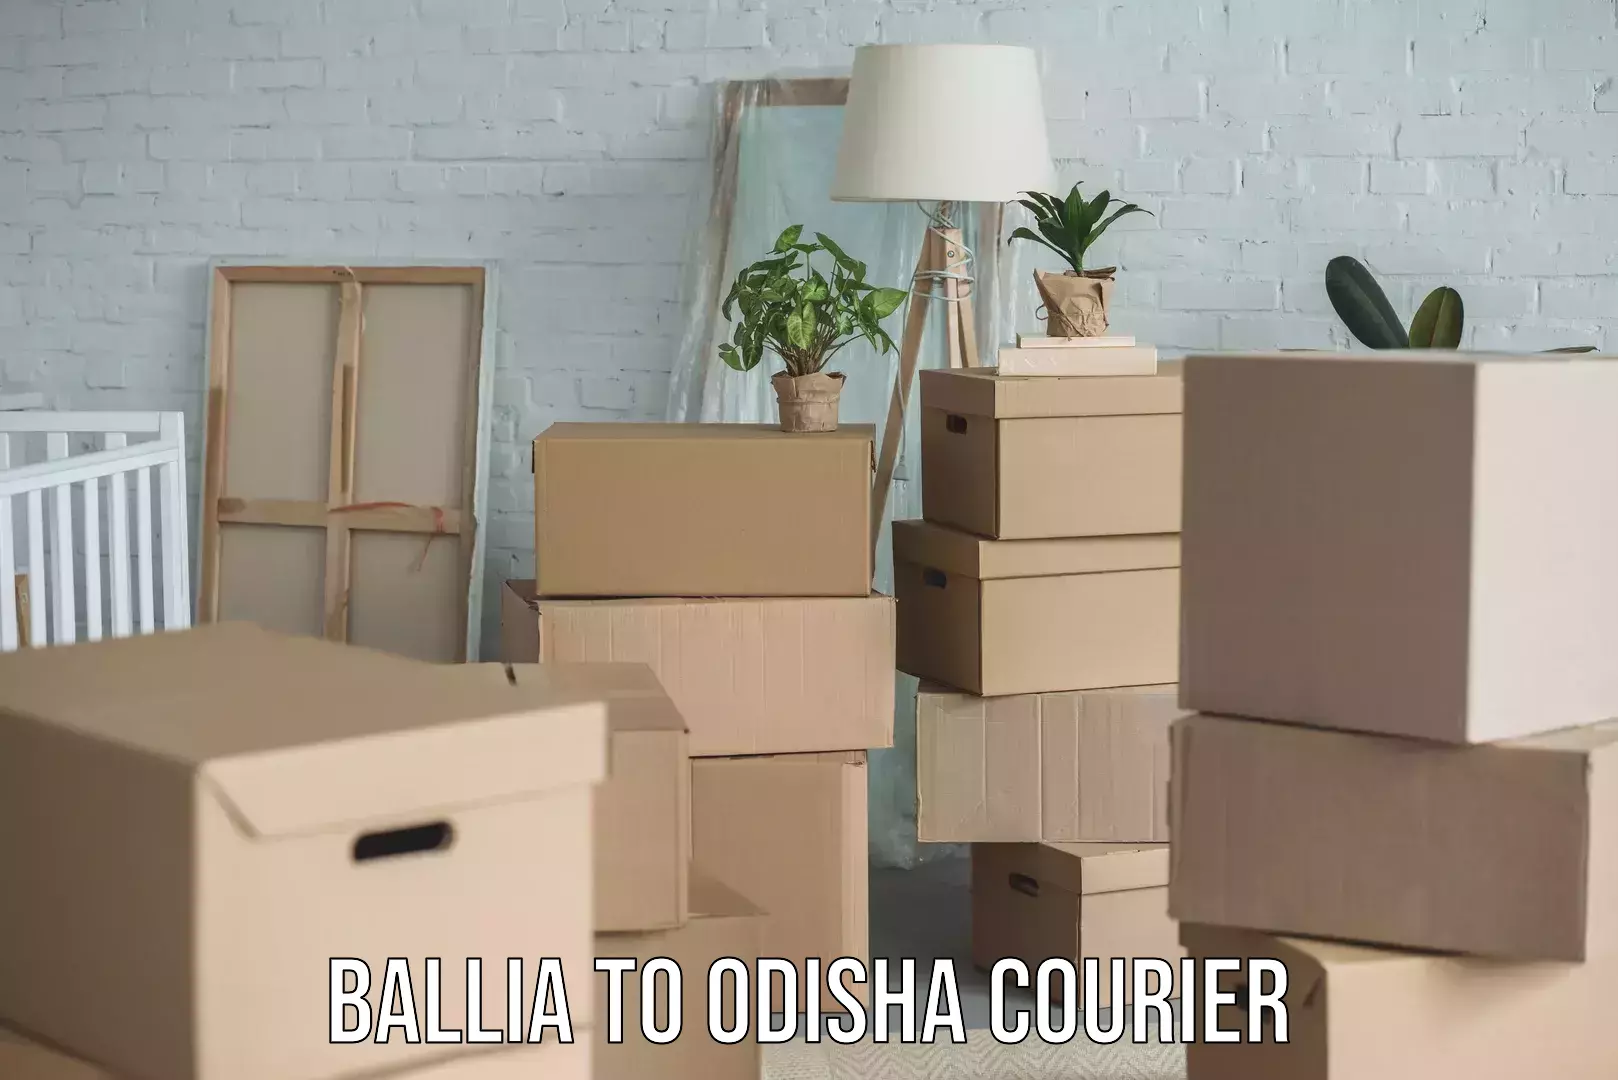 User-friendly delivery service Ballia to Odisha